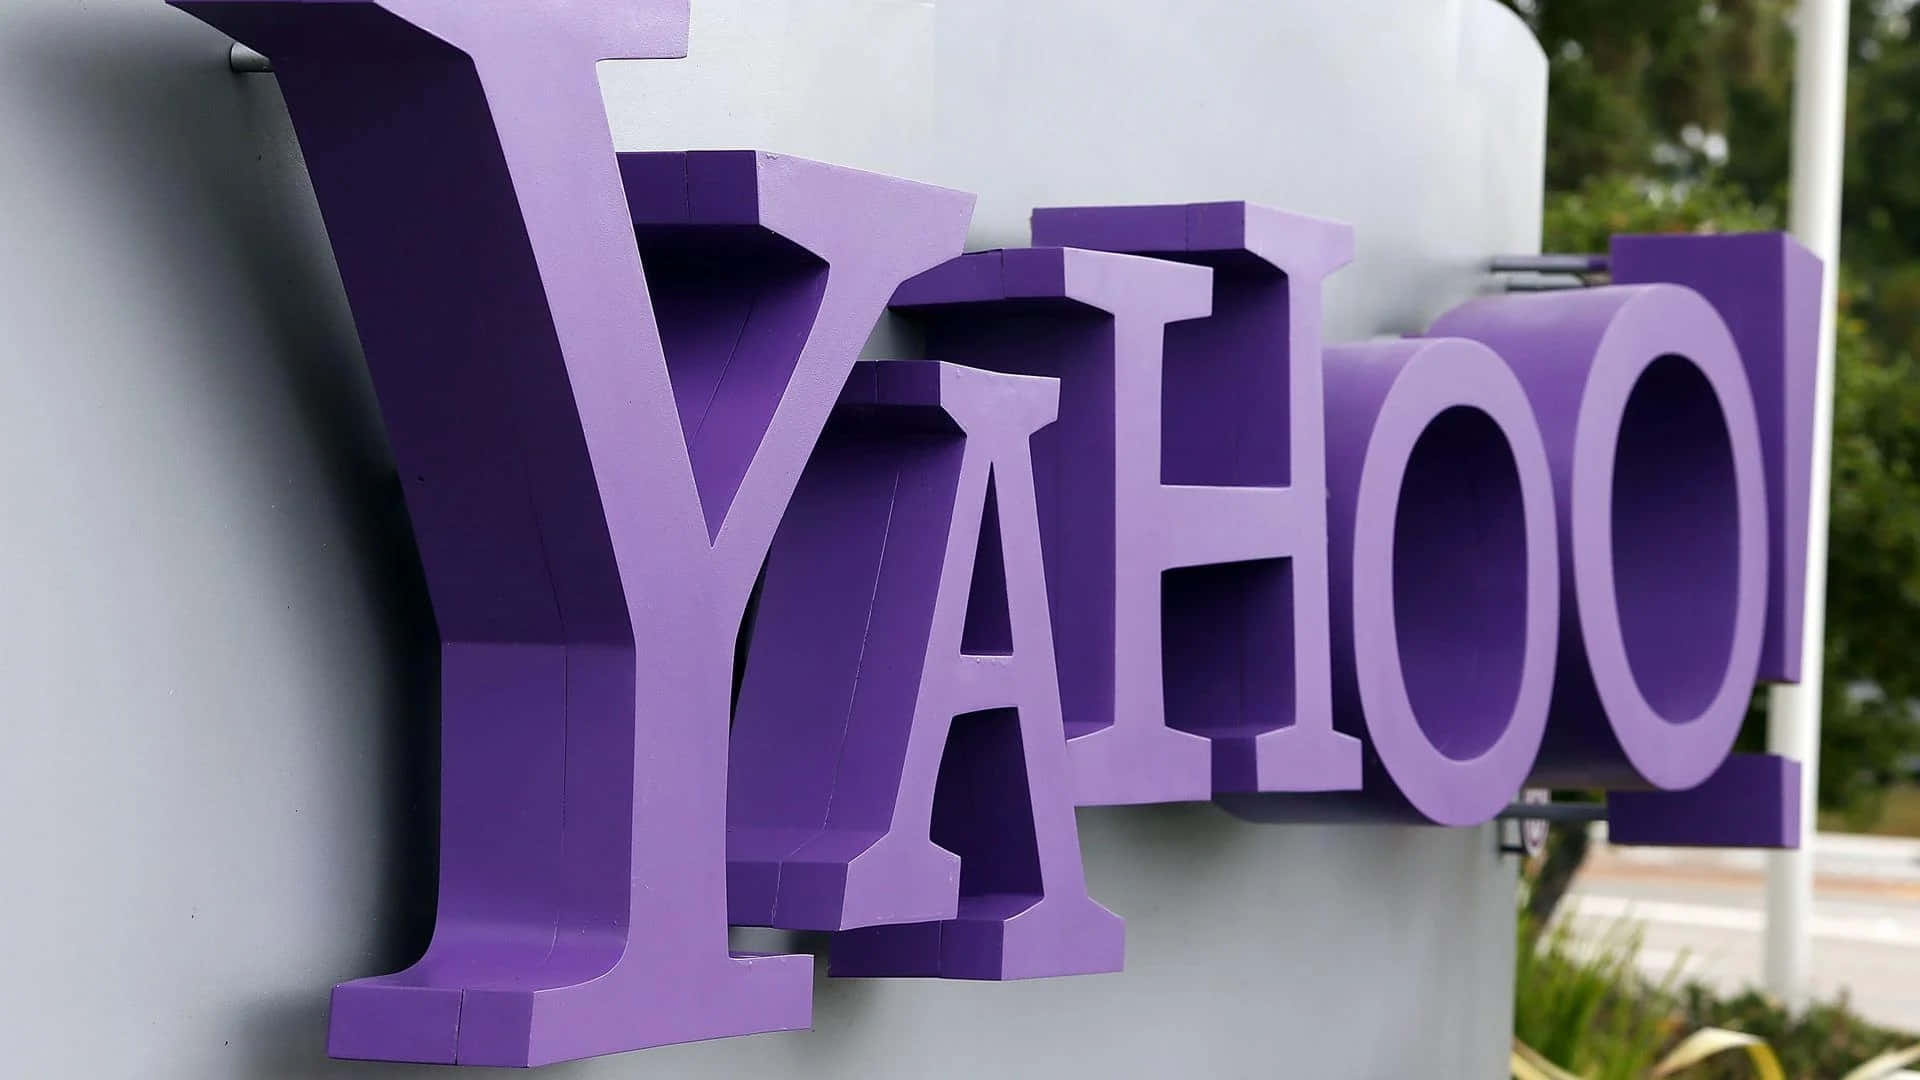 Bleibensie Mit Yahoo In Verbindung Und Erhalten Sie Neuigkeiten, Unterhaltung Und Vieles Mehr!